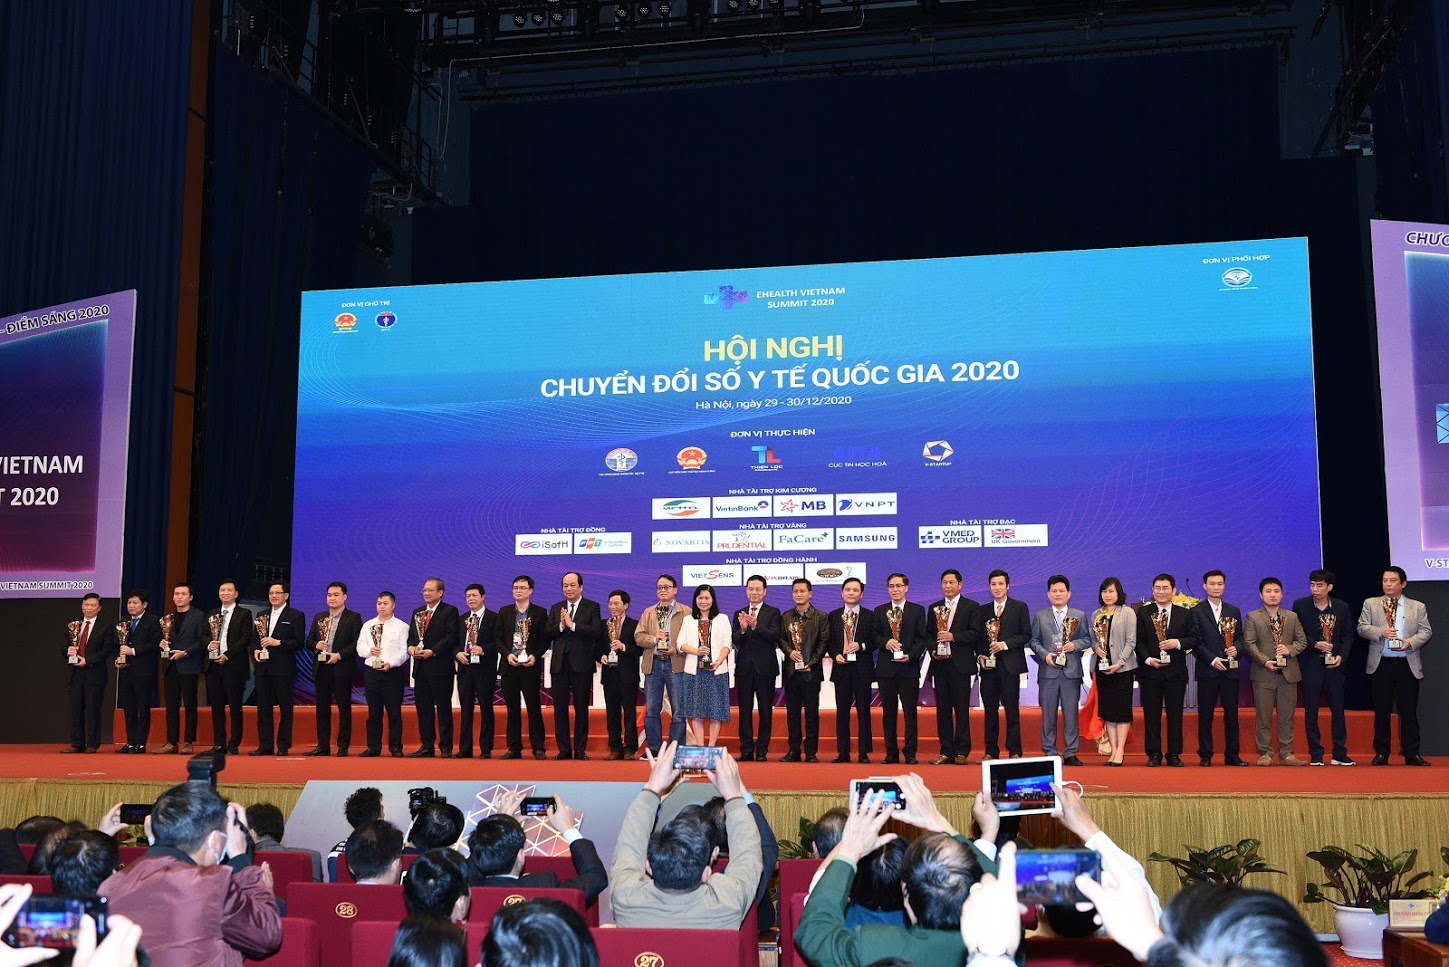 Bệnh viện đa khoa Quốc tế Hải Phòng vinh dự được biểu dương, khen thưởng tại Hội nghị Chuyển đổi số y tế Quốc gia – Điểm sáng 2020